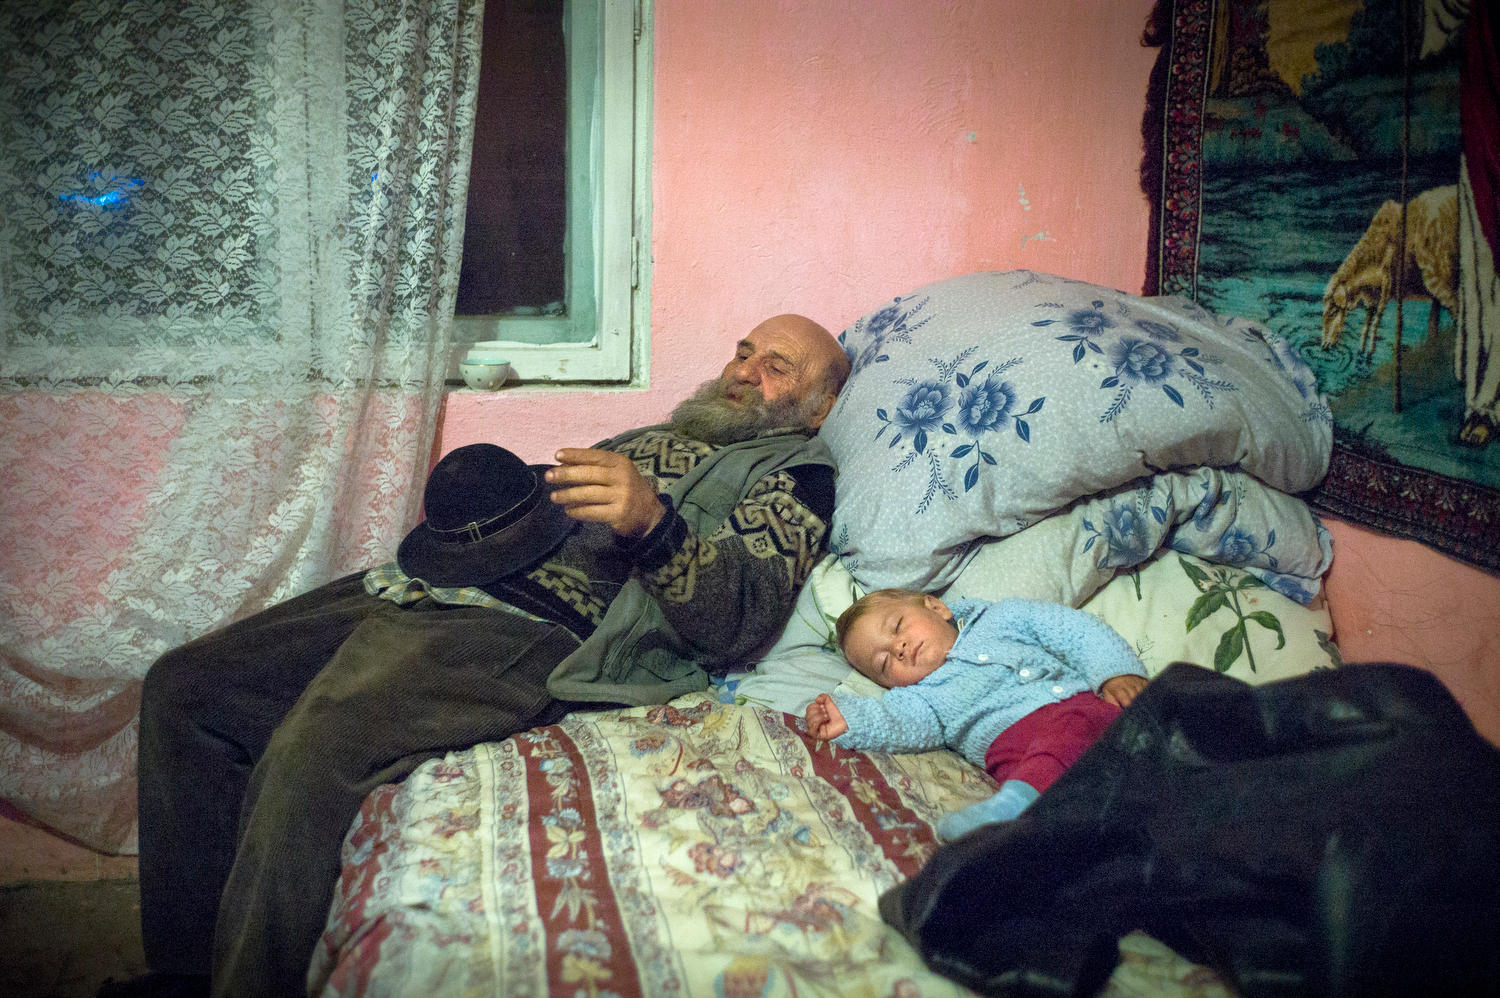 Un homme dort sur un lit avec un enfant à ses côtés